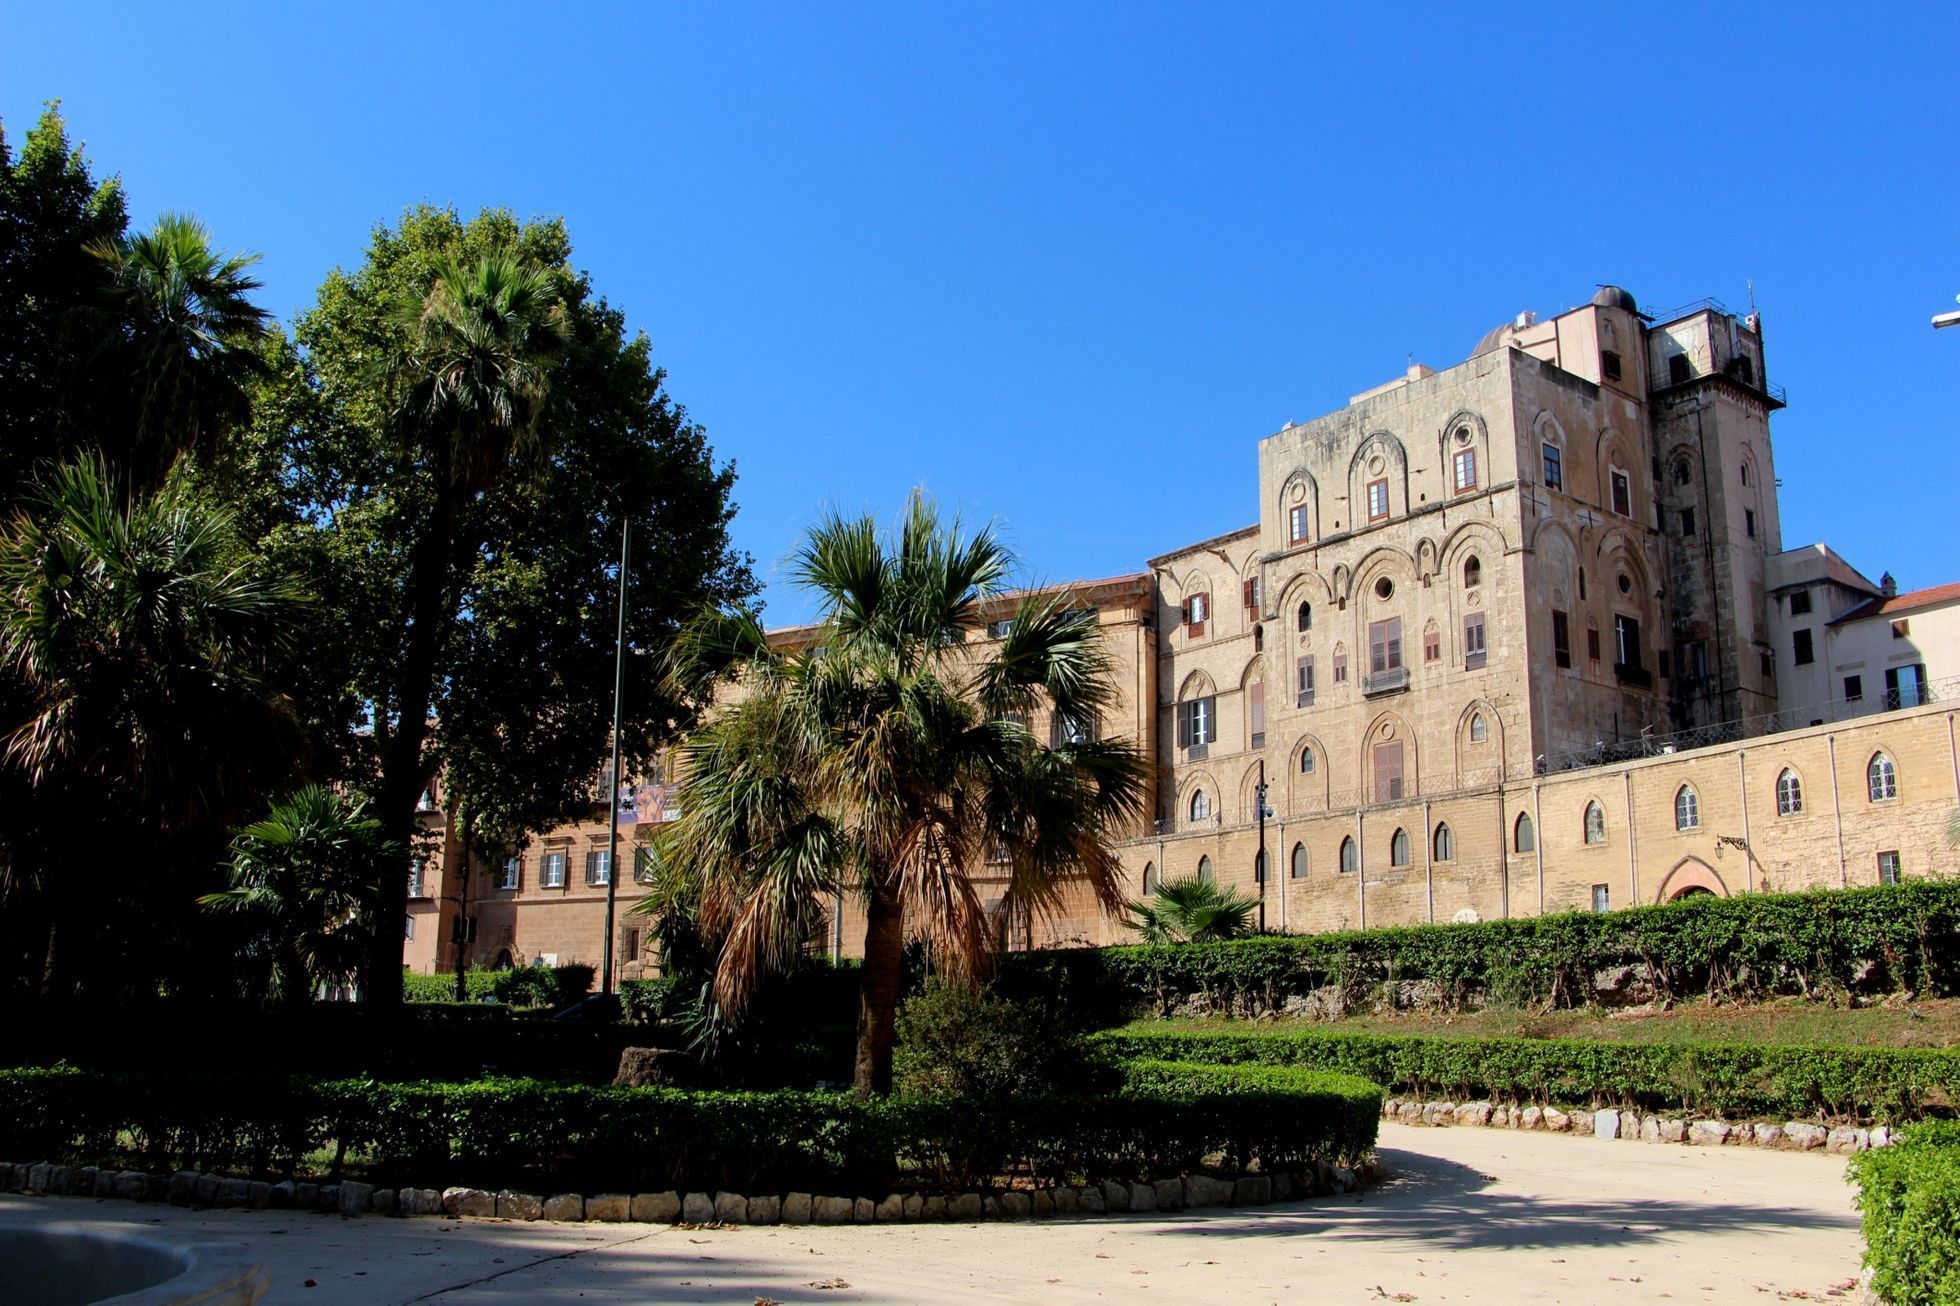 Palermo - Palazzo dei Normanni